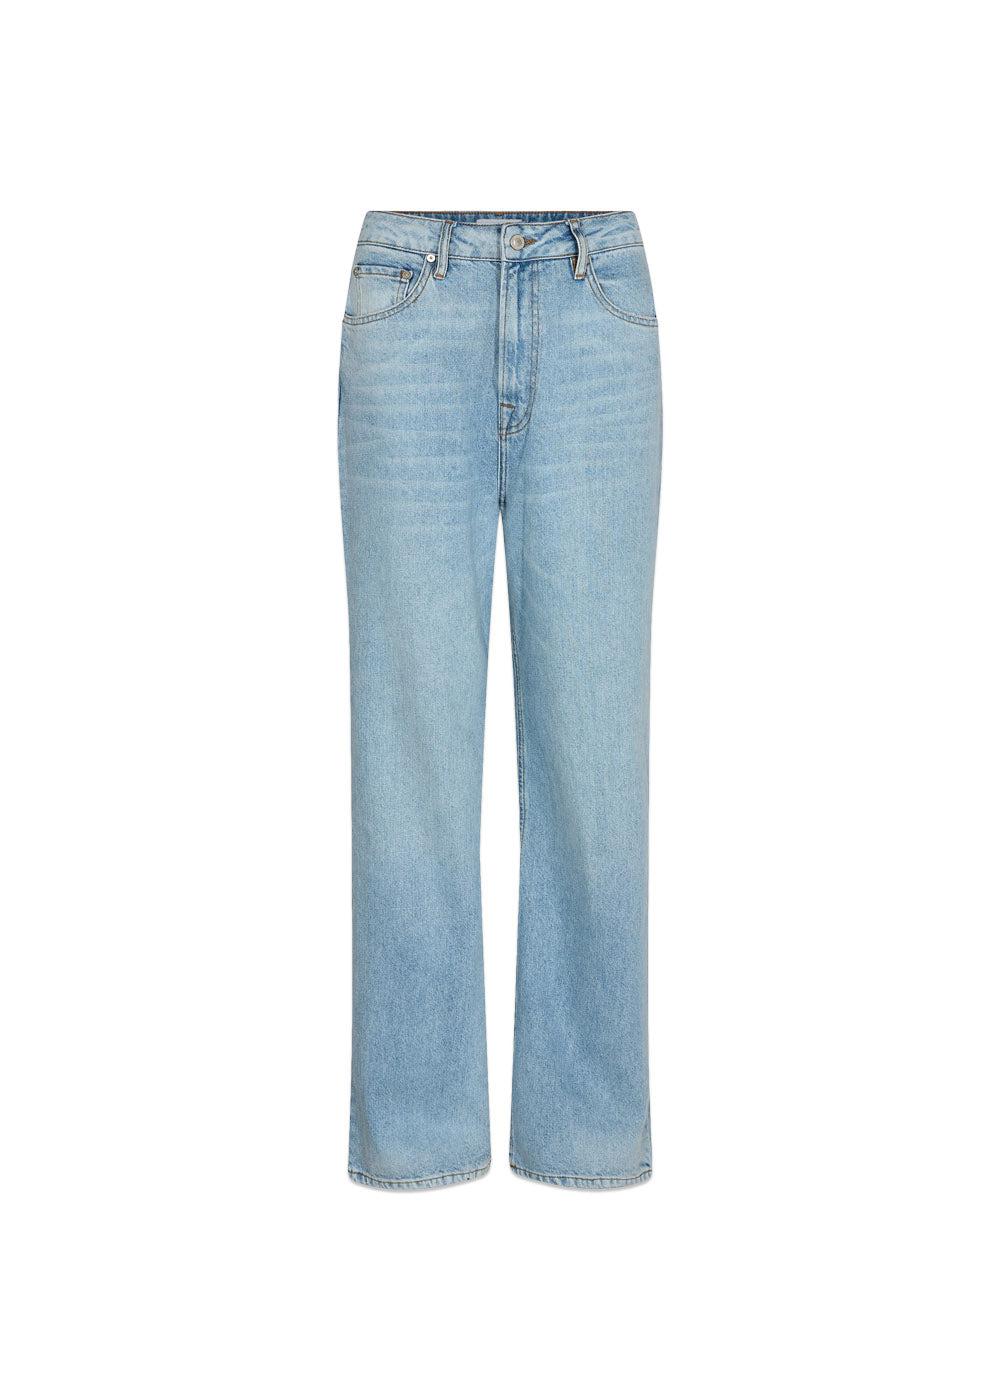 Ivy Copenhagens IVY-Brooke Jeans Wash Puerto Banus - Denim Blue. Køb jeans her.